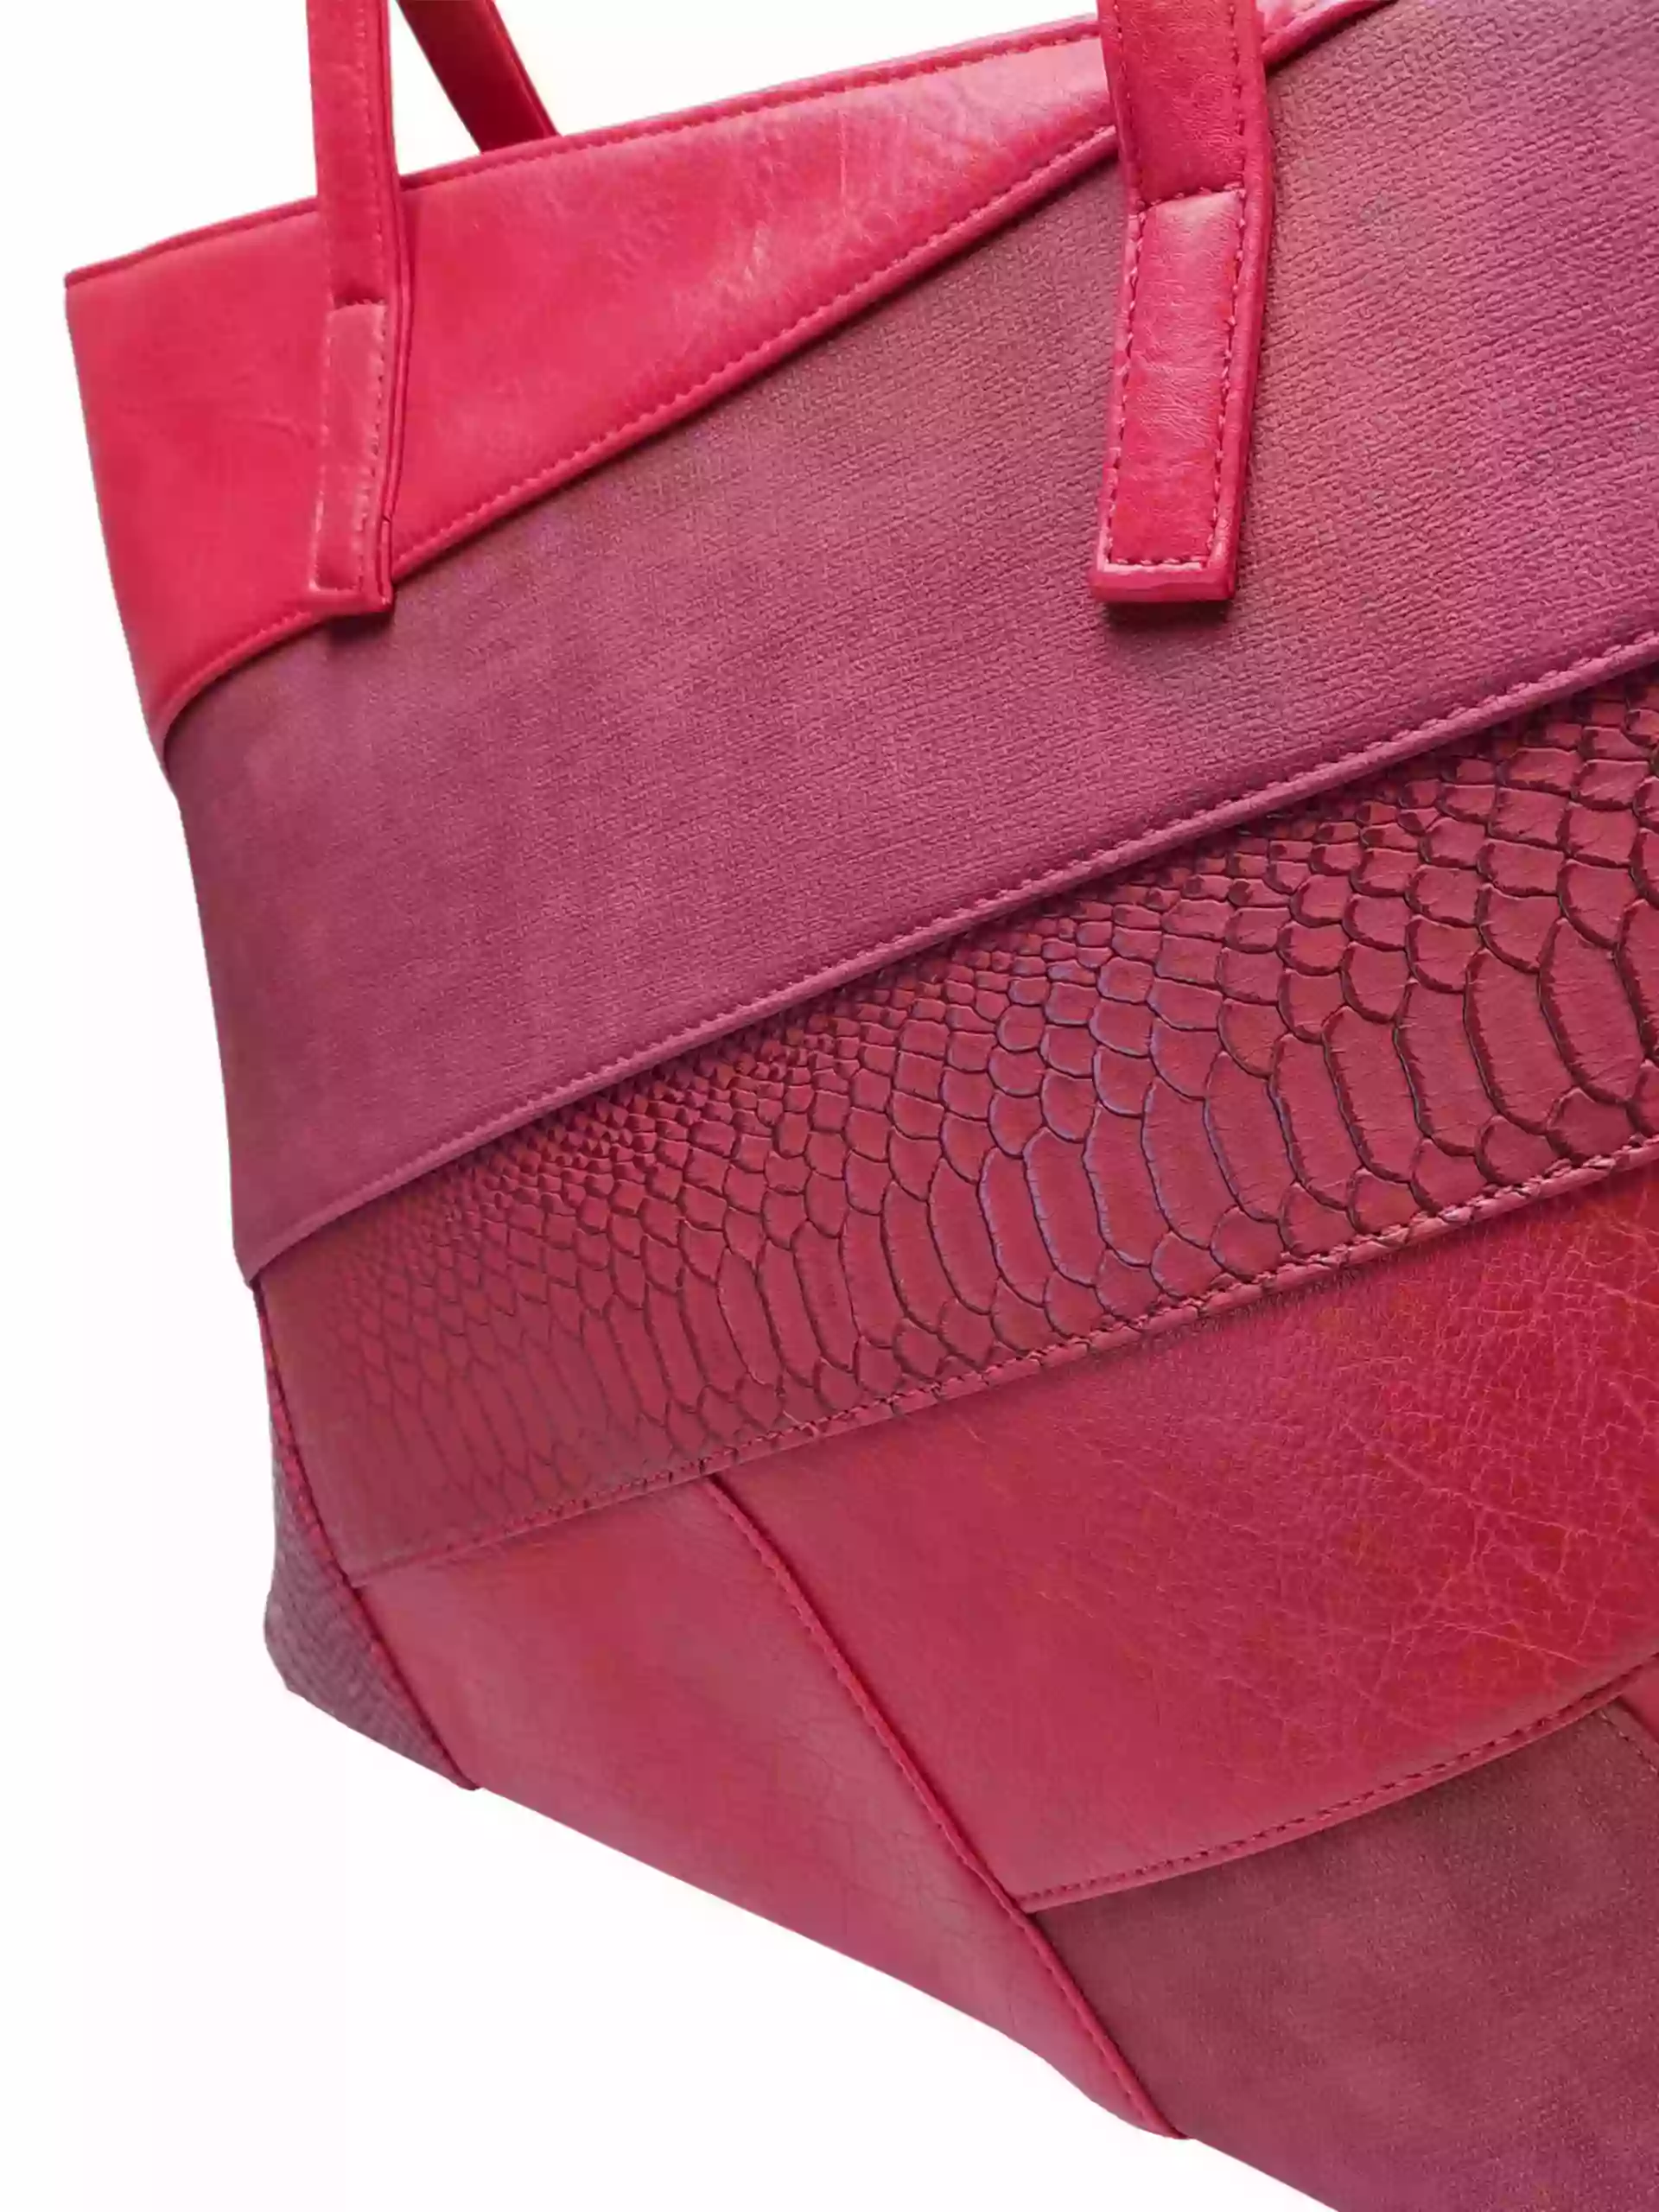 Tmavě červená kabelka přes rameno s šikmými vzory, Tapple, H190030, detail dámské kabelky přes rameno